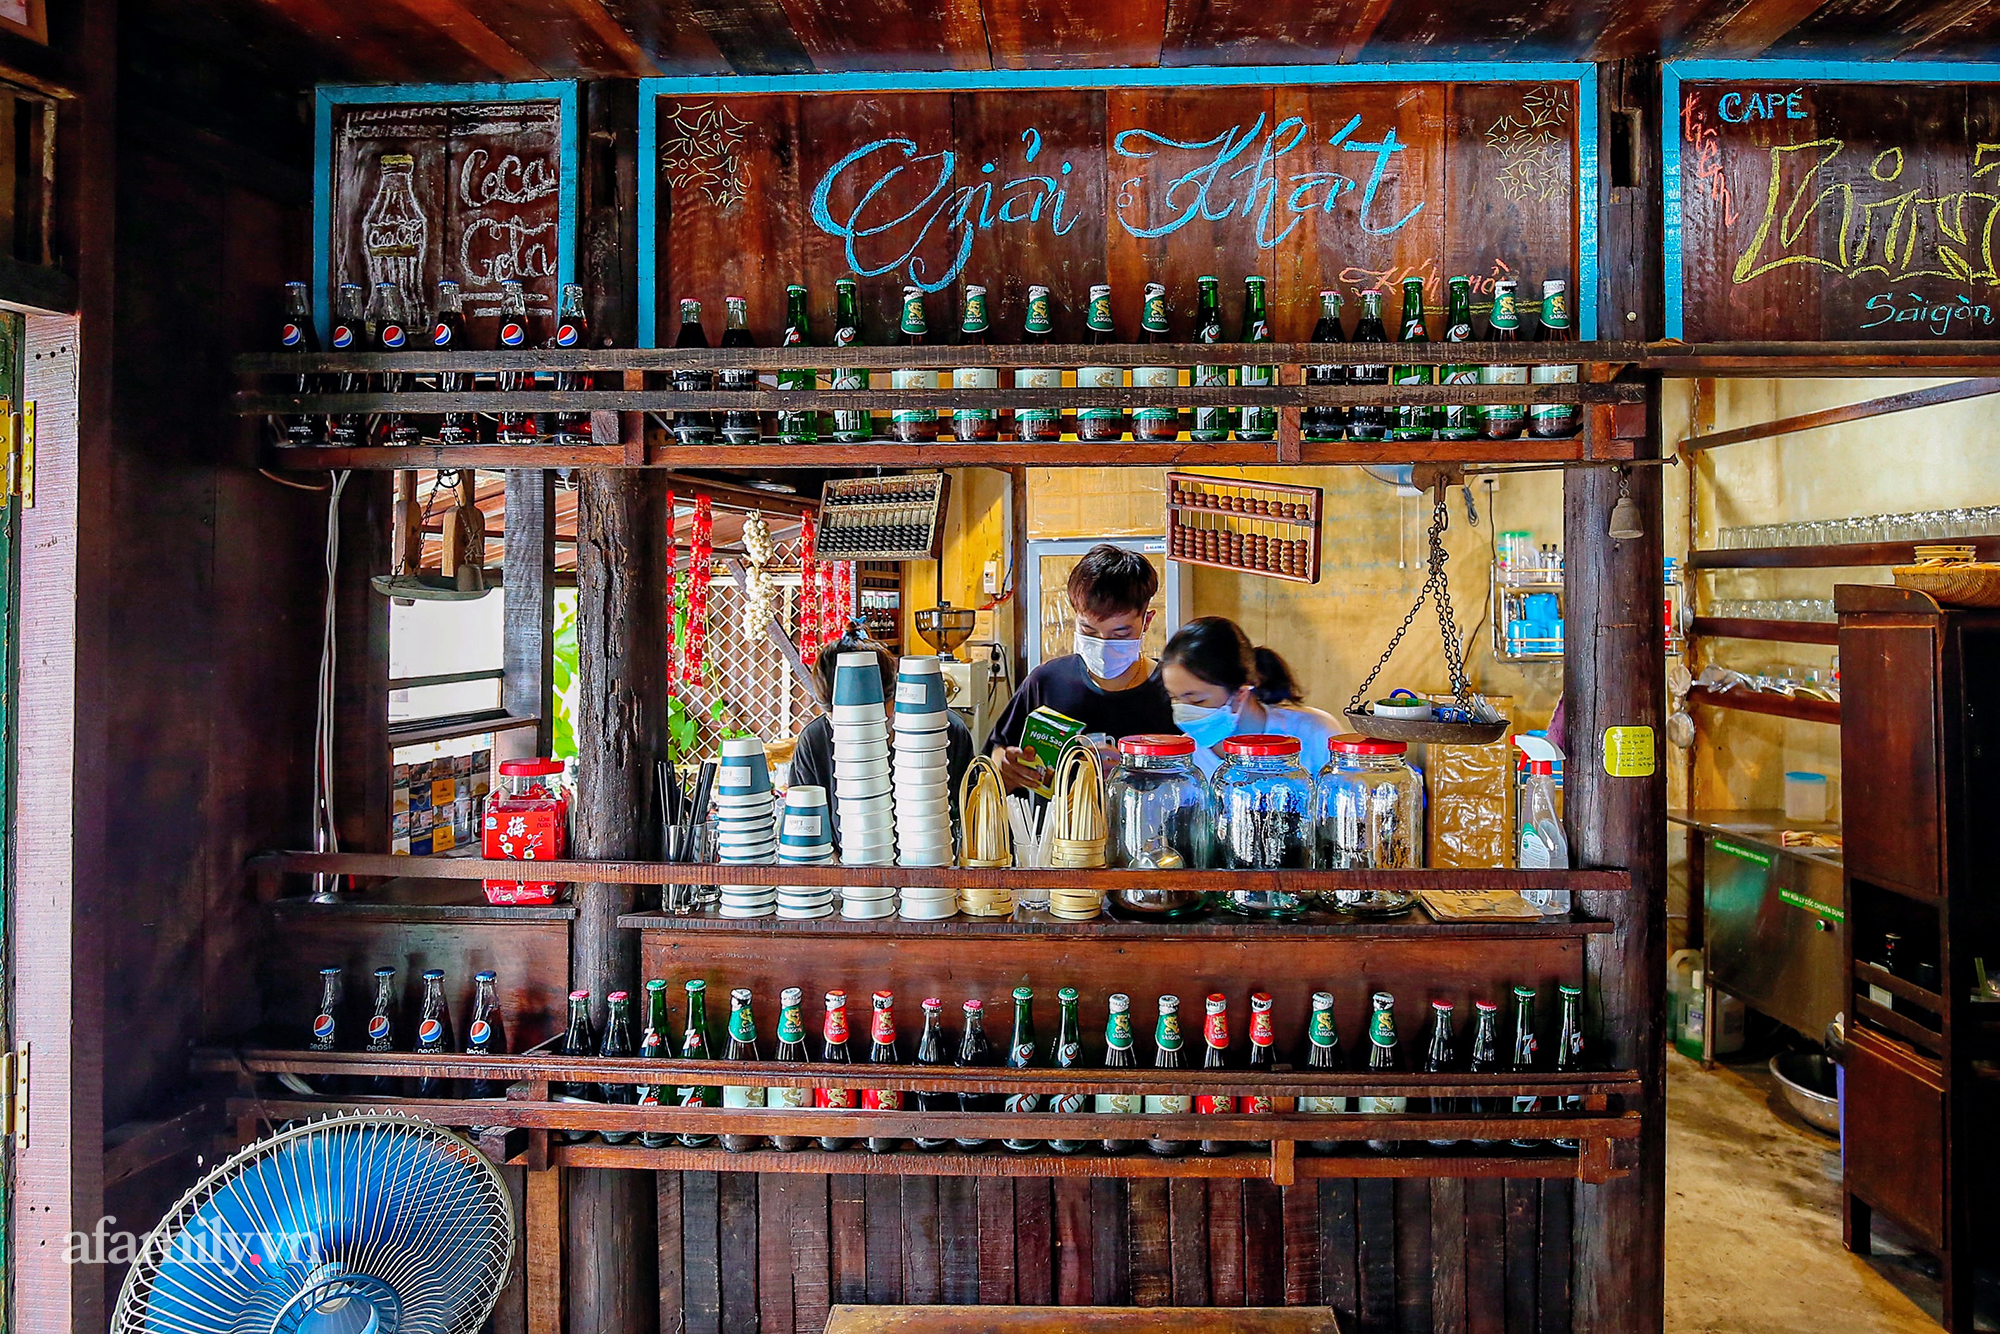 Giữa giao lộ đắt giá quận 1 bất thình lình xuất hiện quán cà phê đậm chất Sài Gòn xưa, hiện là nơi hot đến không tưởng, được check in khắp mạng xã hội - Ảnh 7.